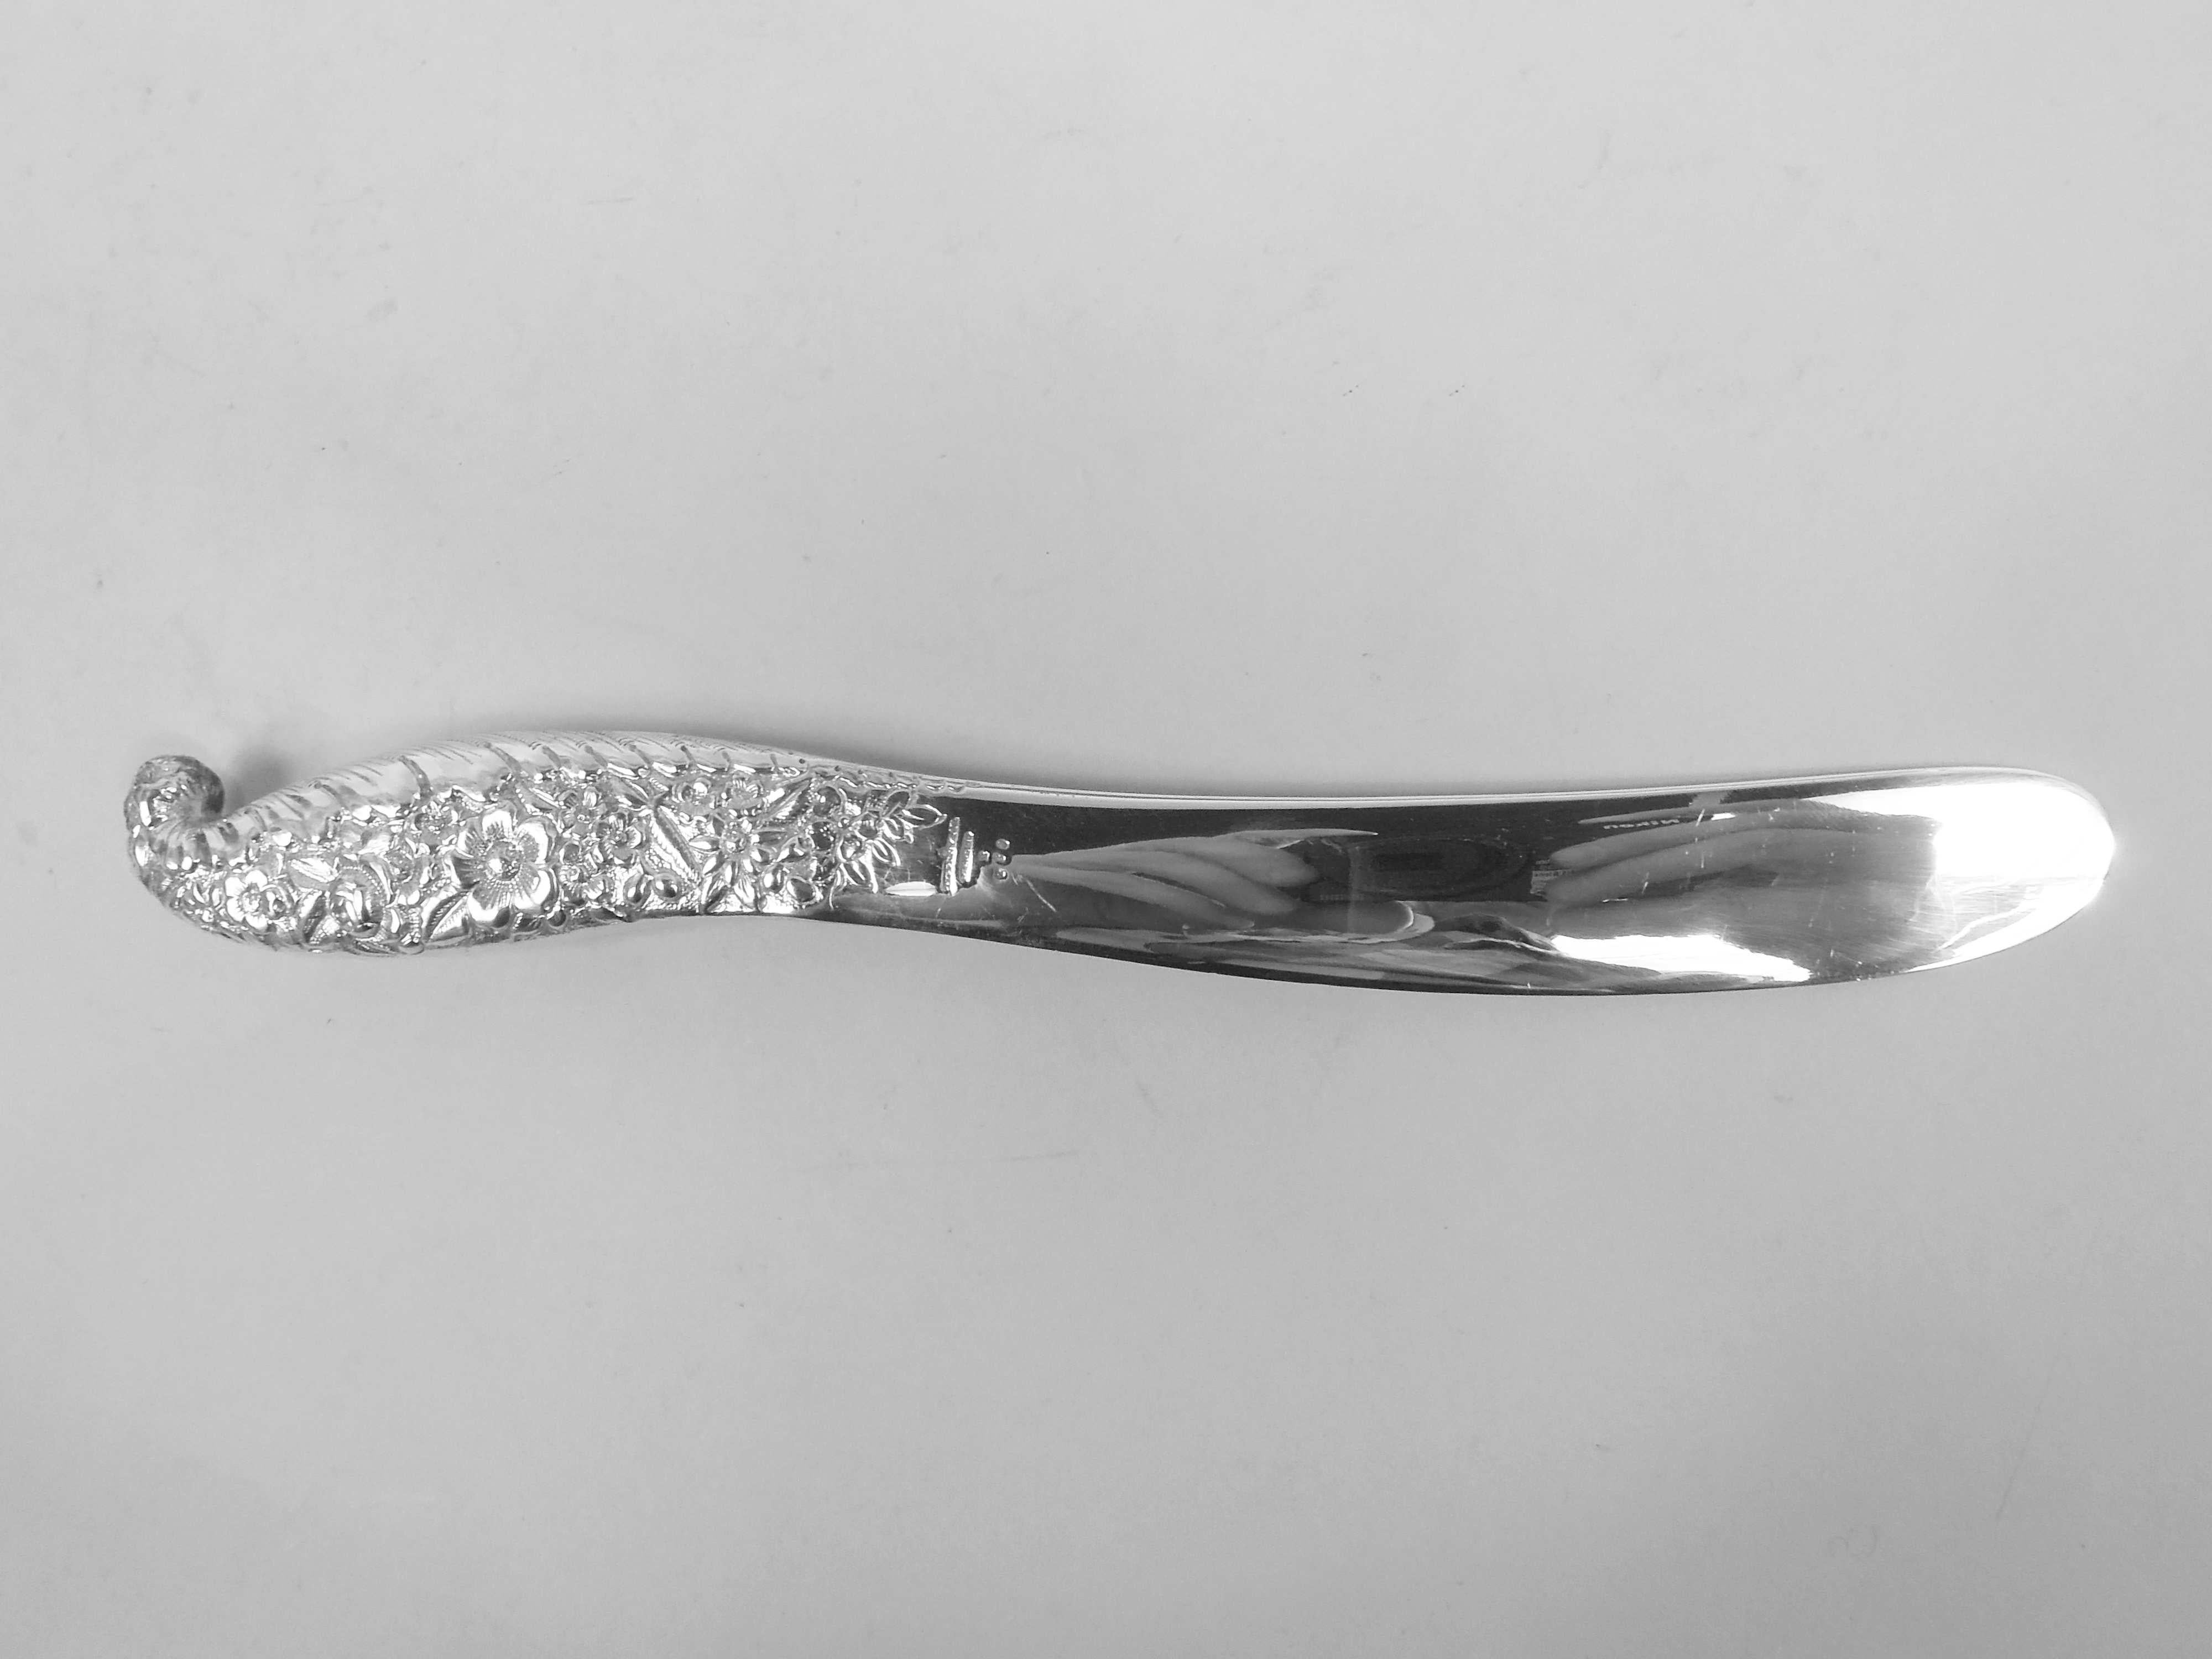 Viktorianisches klassisches Papiermesser aus Sterlingsilber. Hergestellt von Tiffany & Co. in New York, ca. 1885. Schlangenförmig und einteilig mit hohlem Griff, der sich in eine flache Klinge verjüngt. Griff mit floraler Allover-Repoussierung und